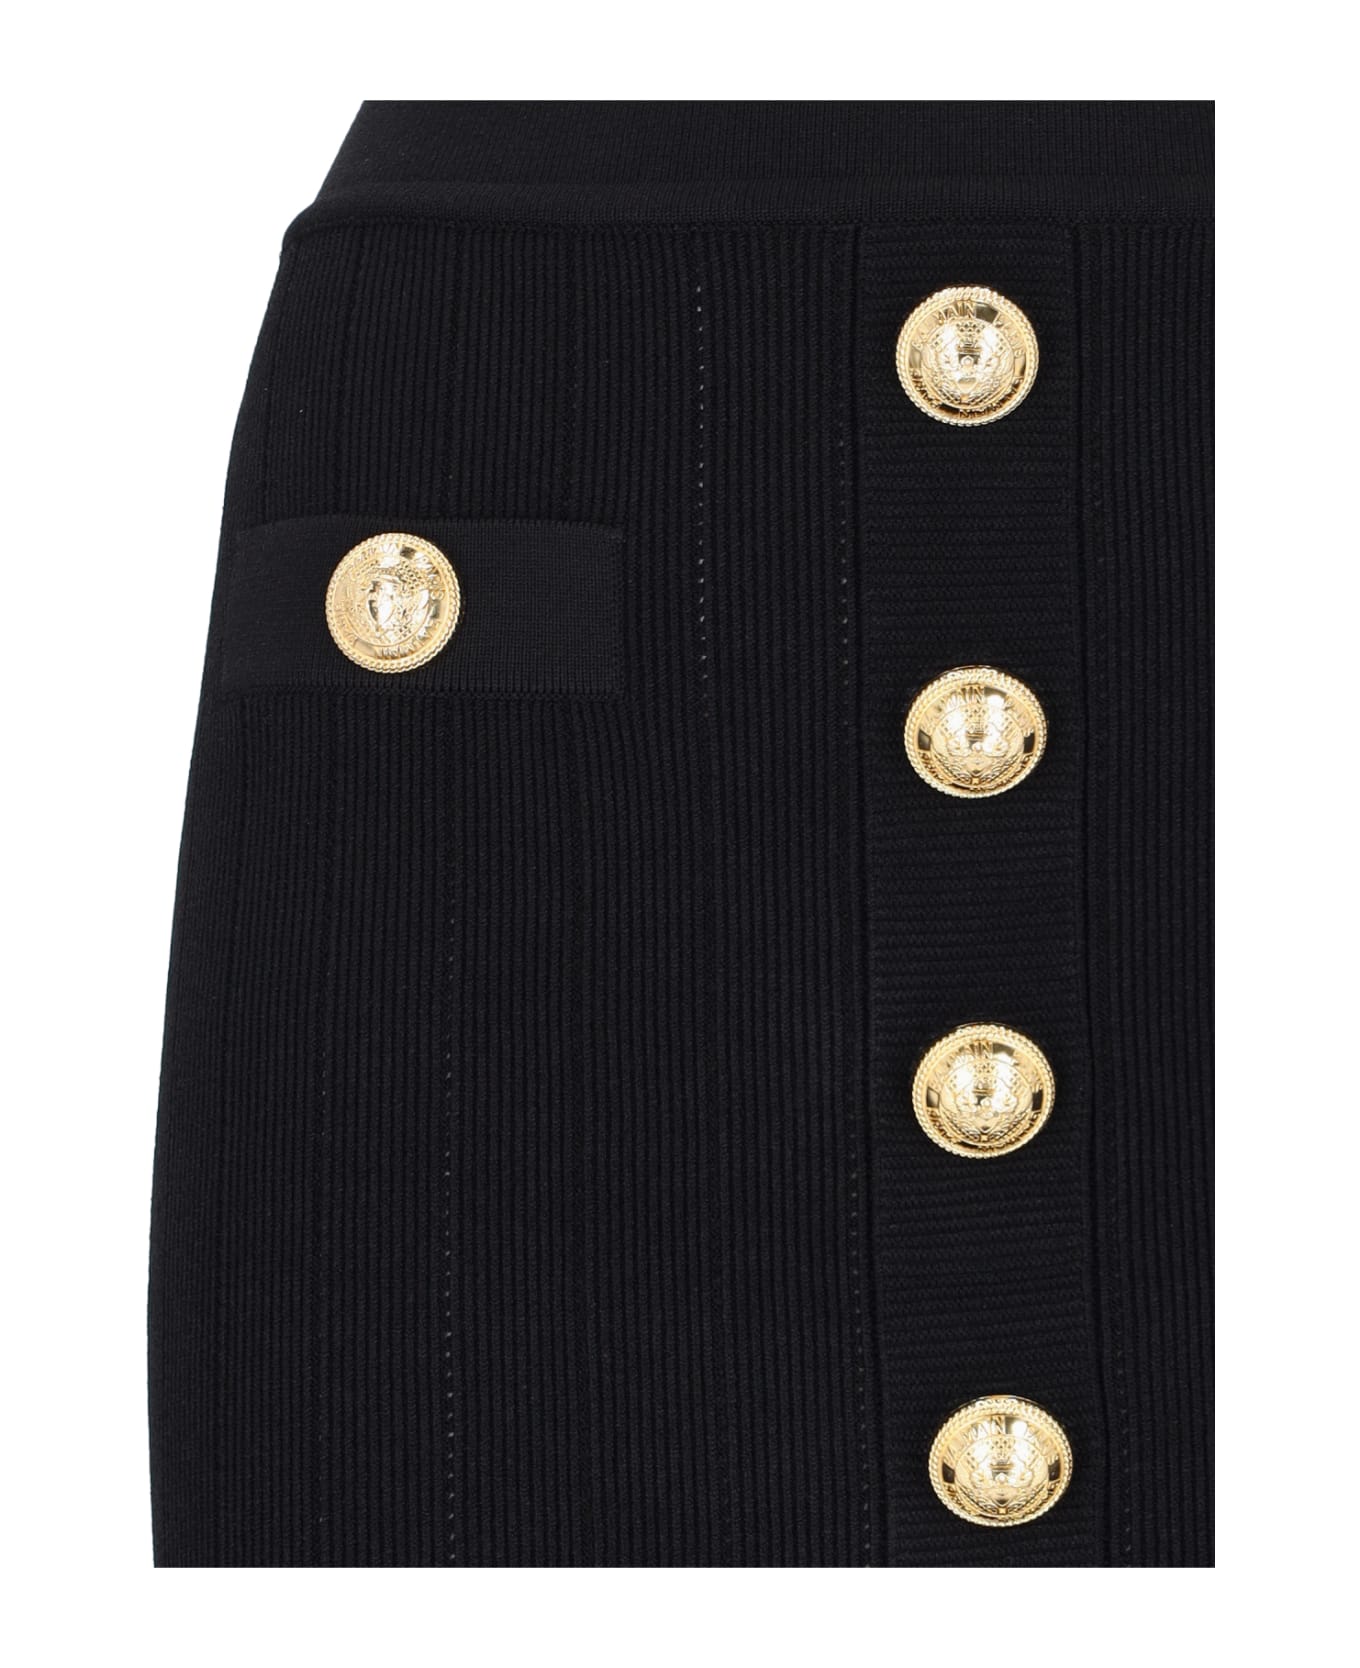 Balmain Knitted Mini Skirt - Black   スカート